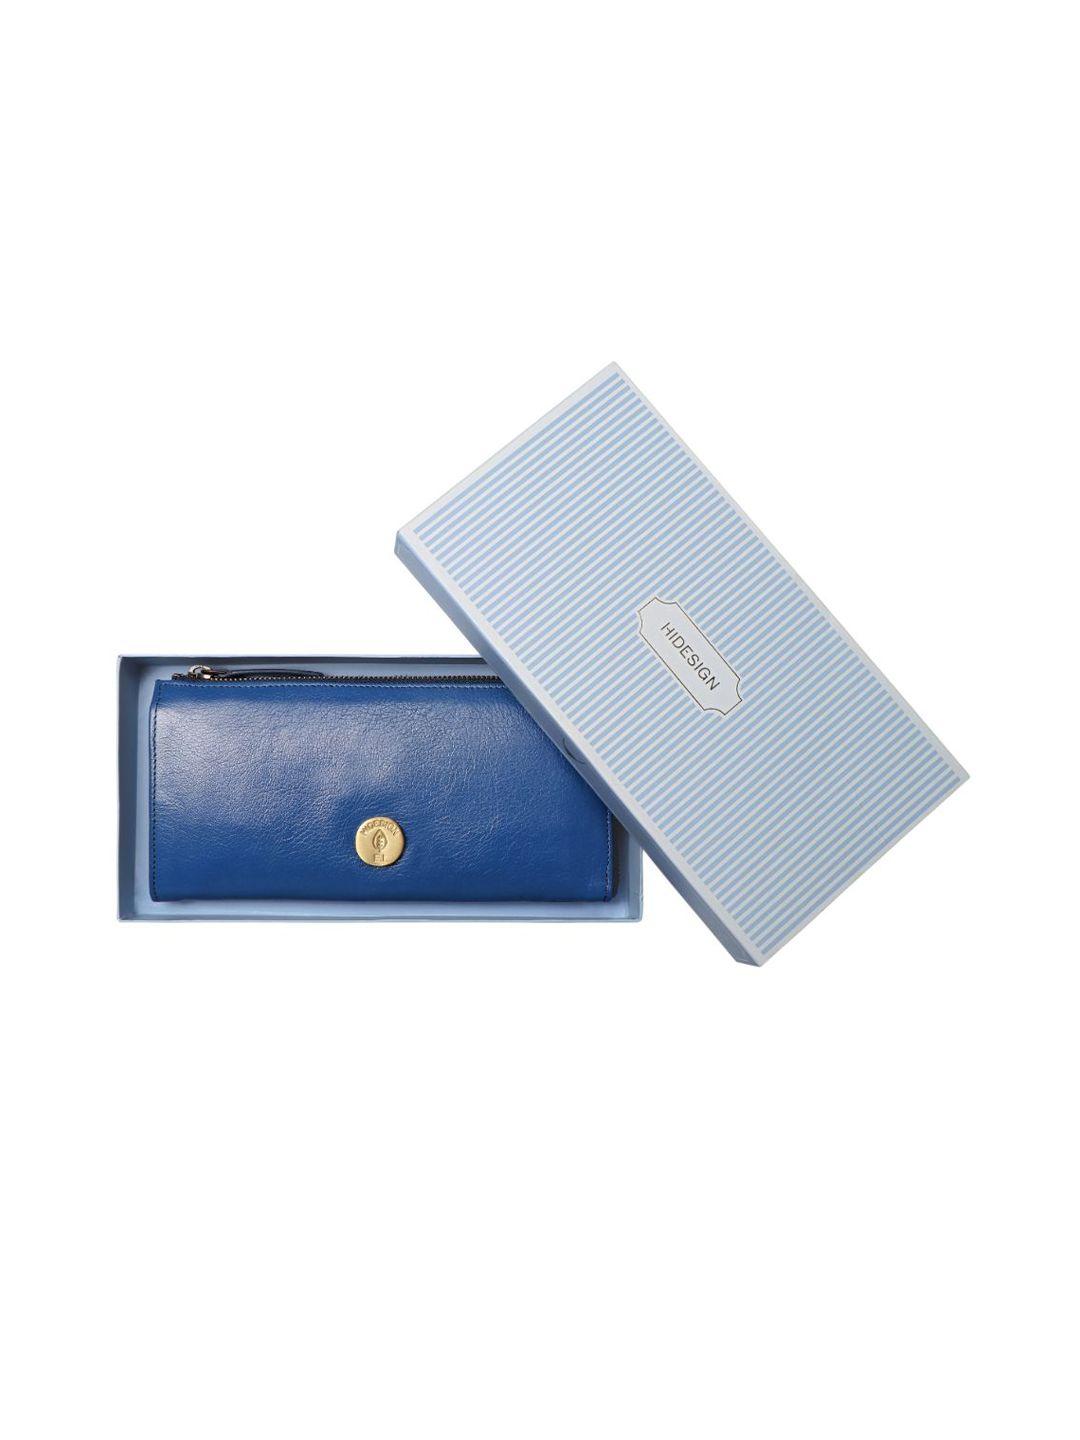 hidesign blue purse clutch